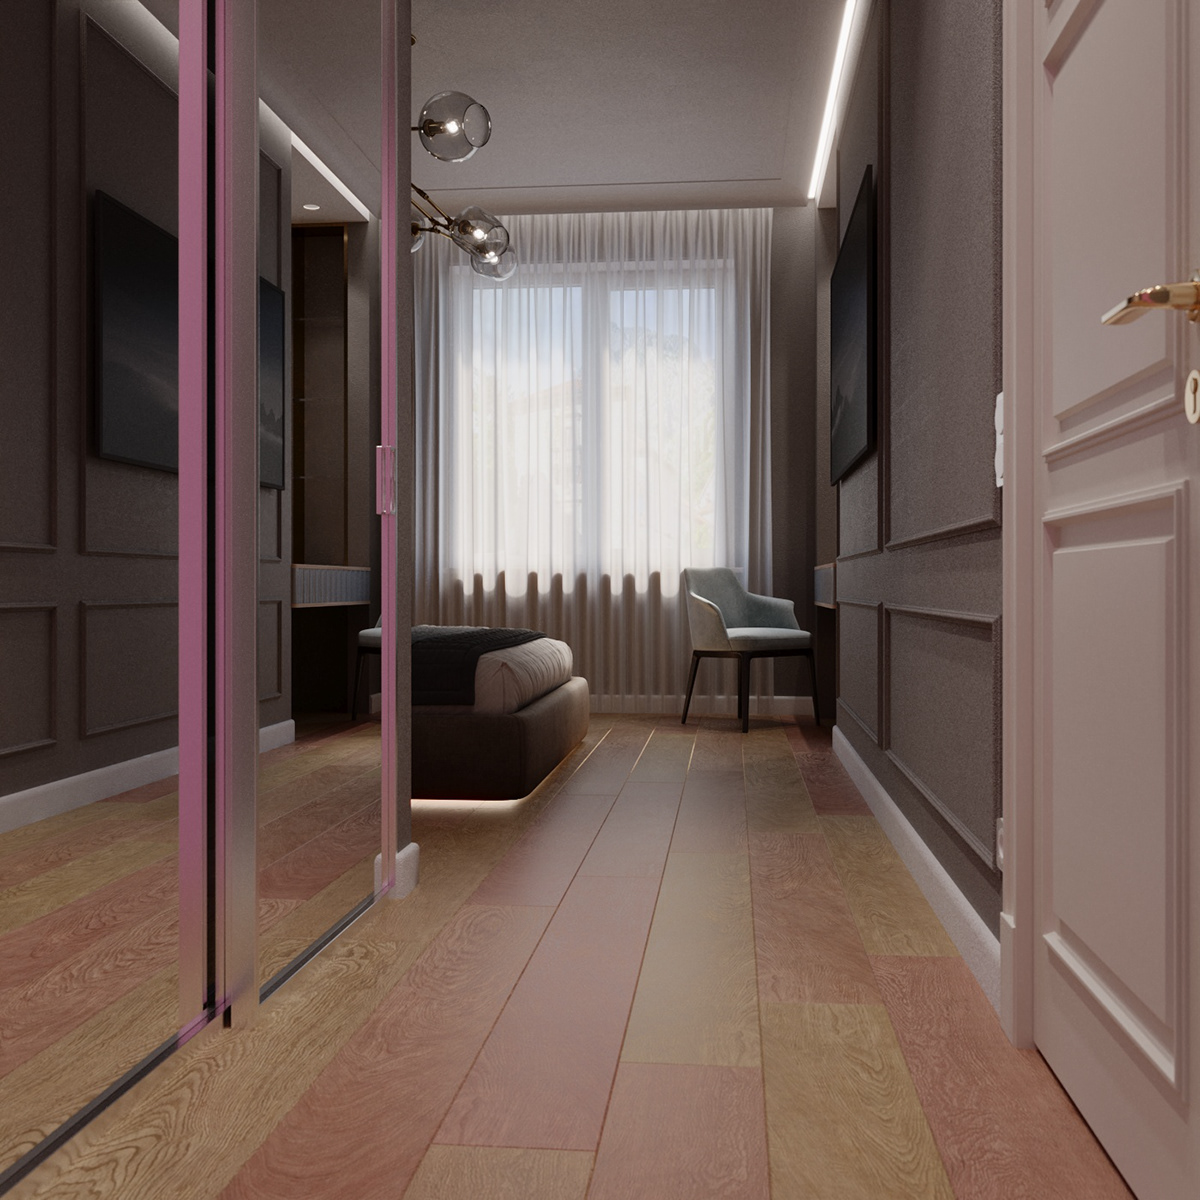 3ds max visualization interior design  corona Render vray architecture interiordesign bedroom Interior